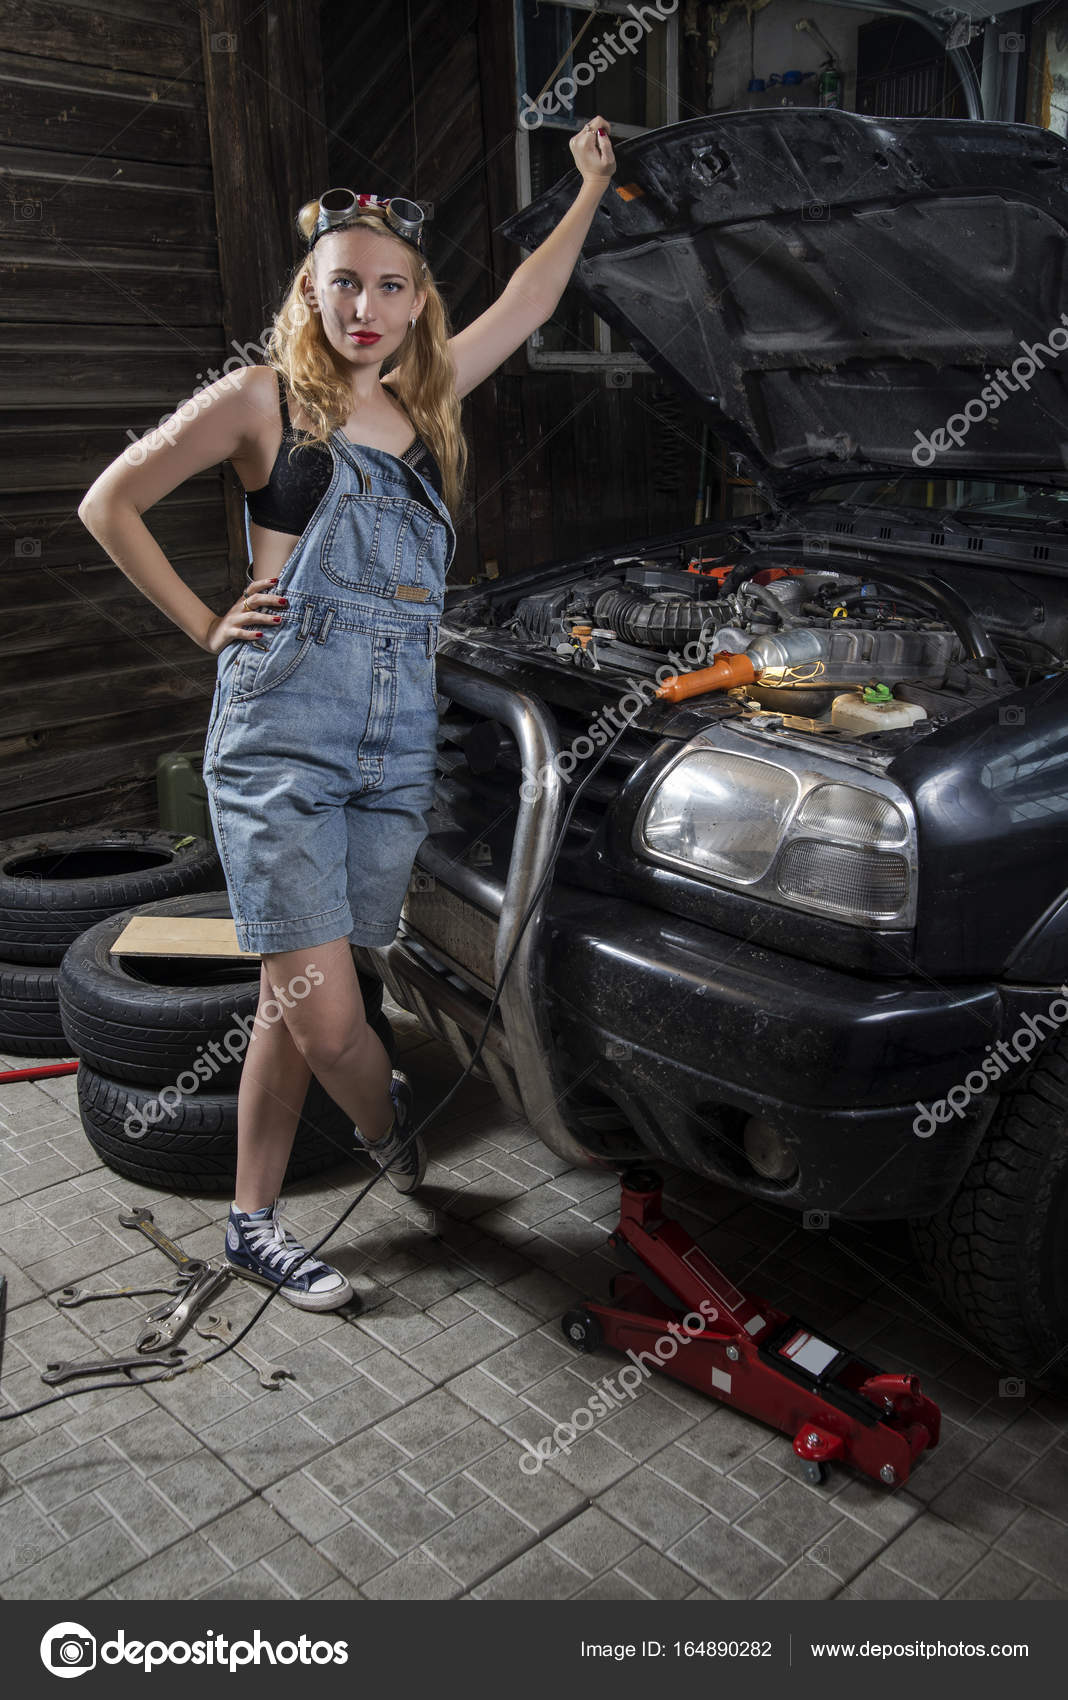 Механик трахается с восхитительными девушками в гараже